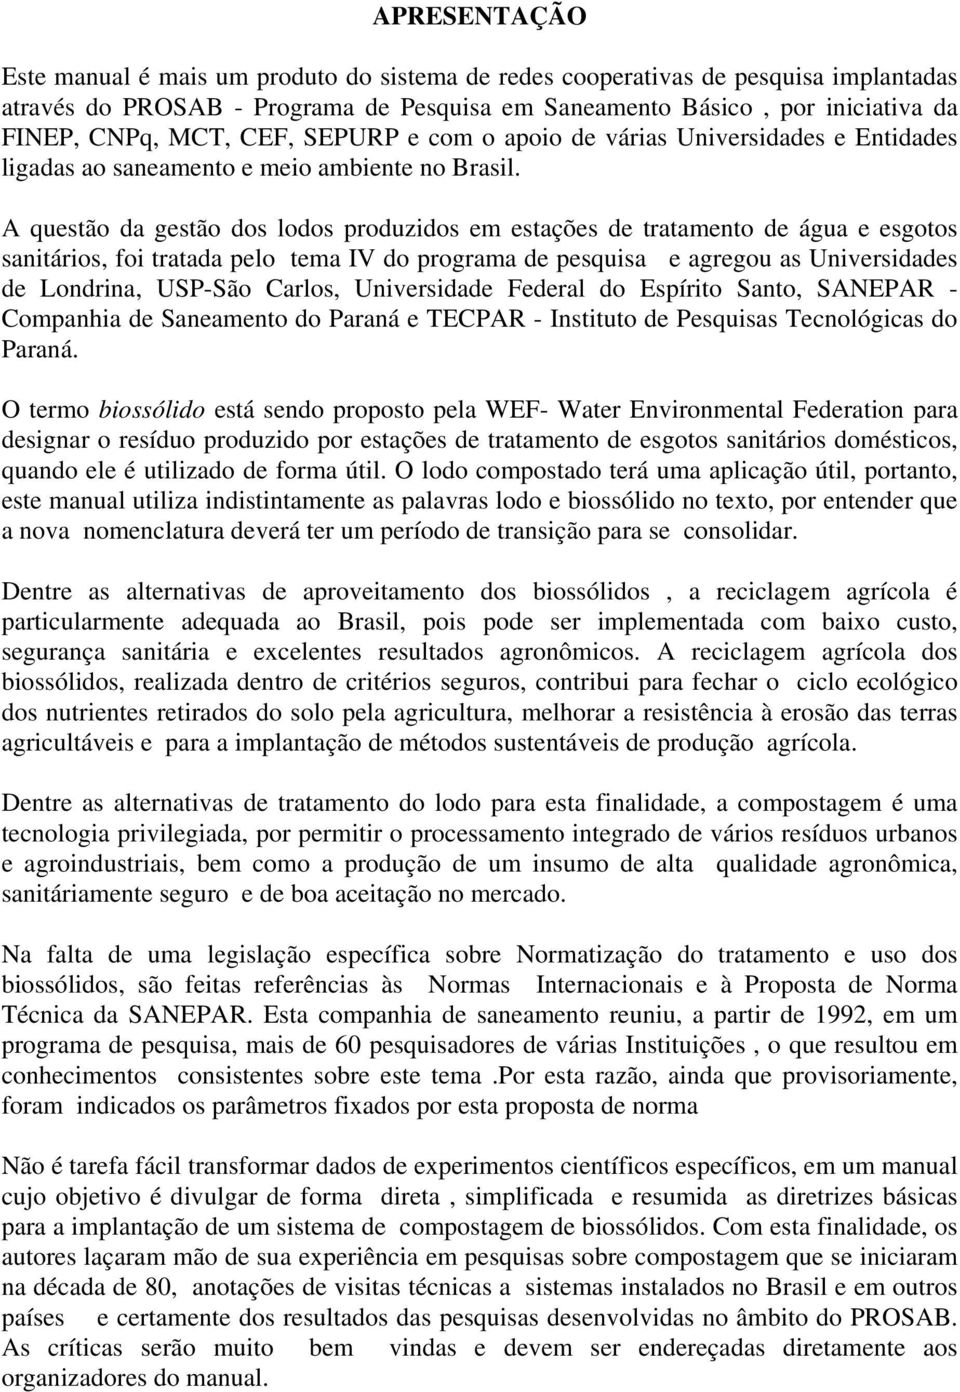 A questão da gestão dos lodos produzidos em estações de tratamento de água e esgotos sanitários, foi tratada pelo tema IV do programa de pesquisa e agregou as Universidades de Londrina, USP-São